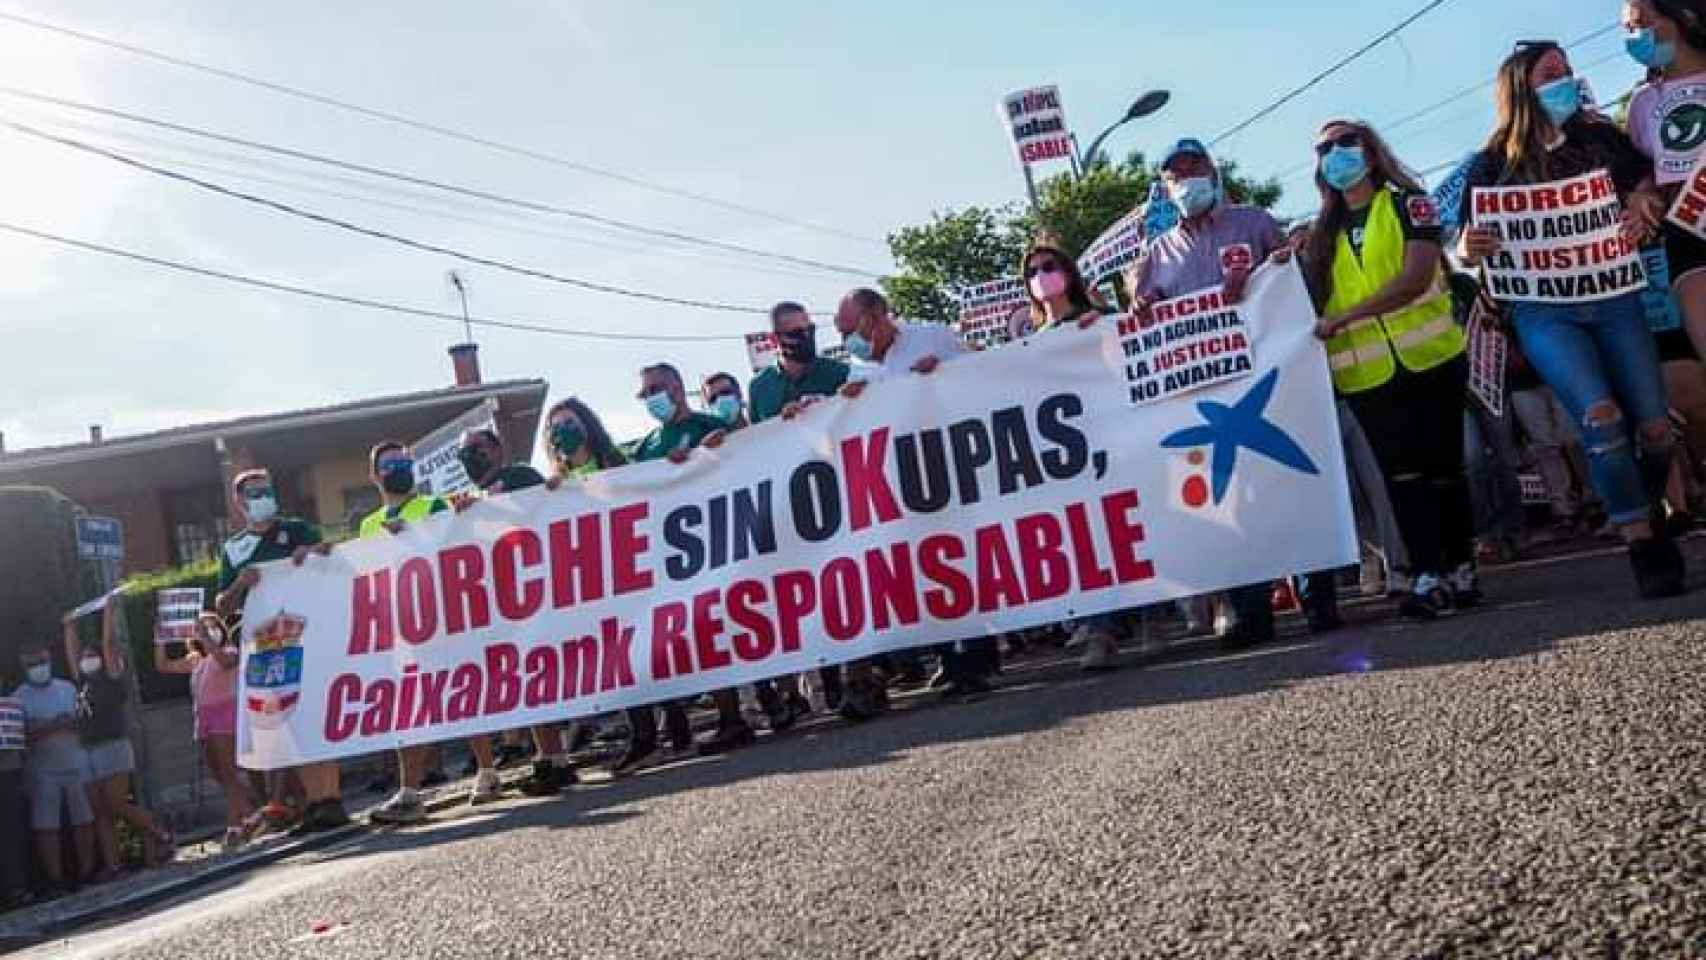 Los vecinos de Horche (Guadalajara) se han manifestado contra los okupas